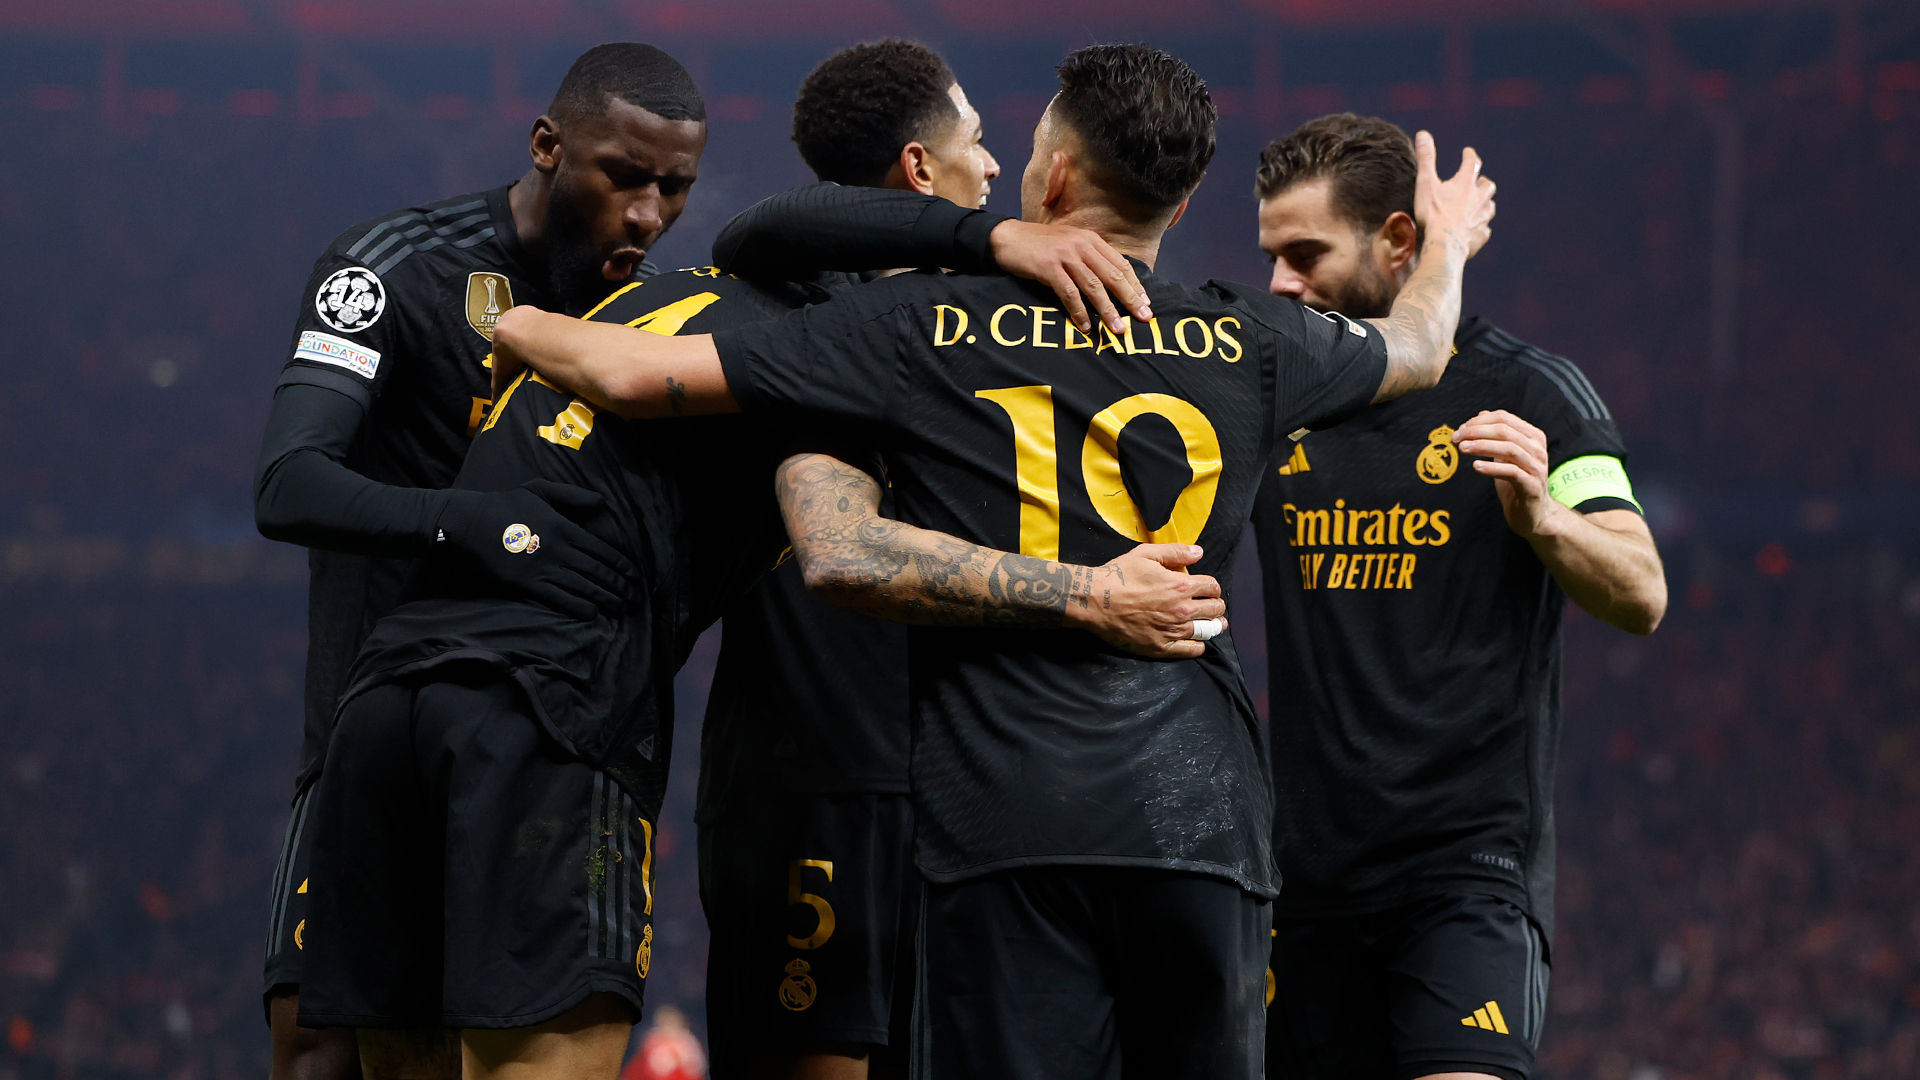 Tercer pleno de victorias del Real Madrid en la Fase de Grupos de la Champions